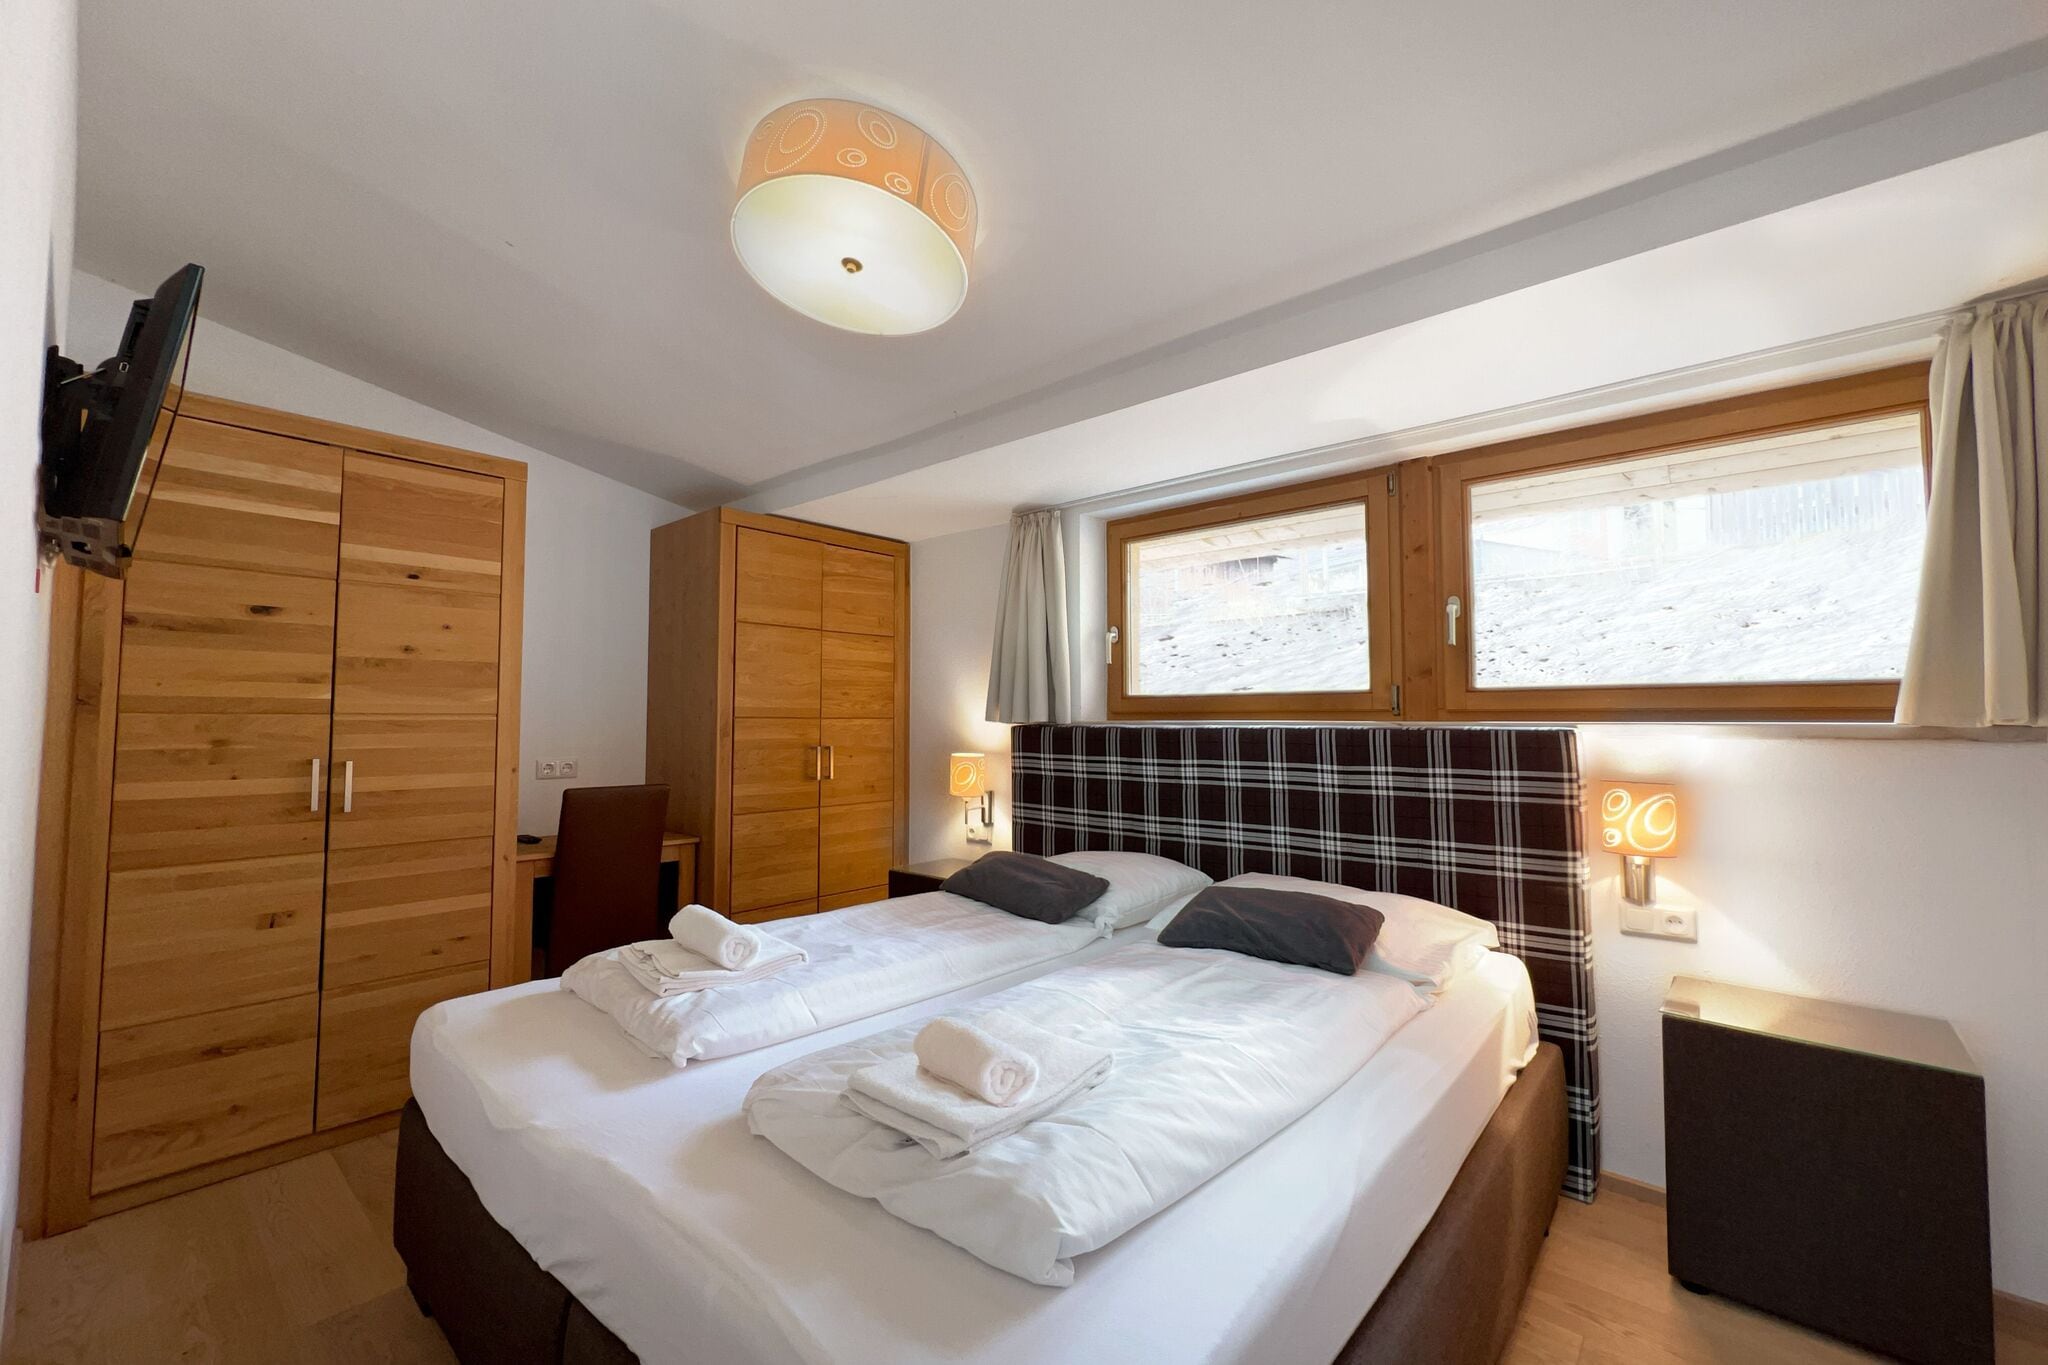 Premium apartment in Piesendorf near ski area